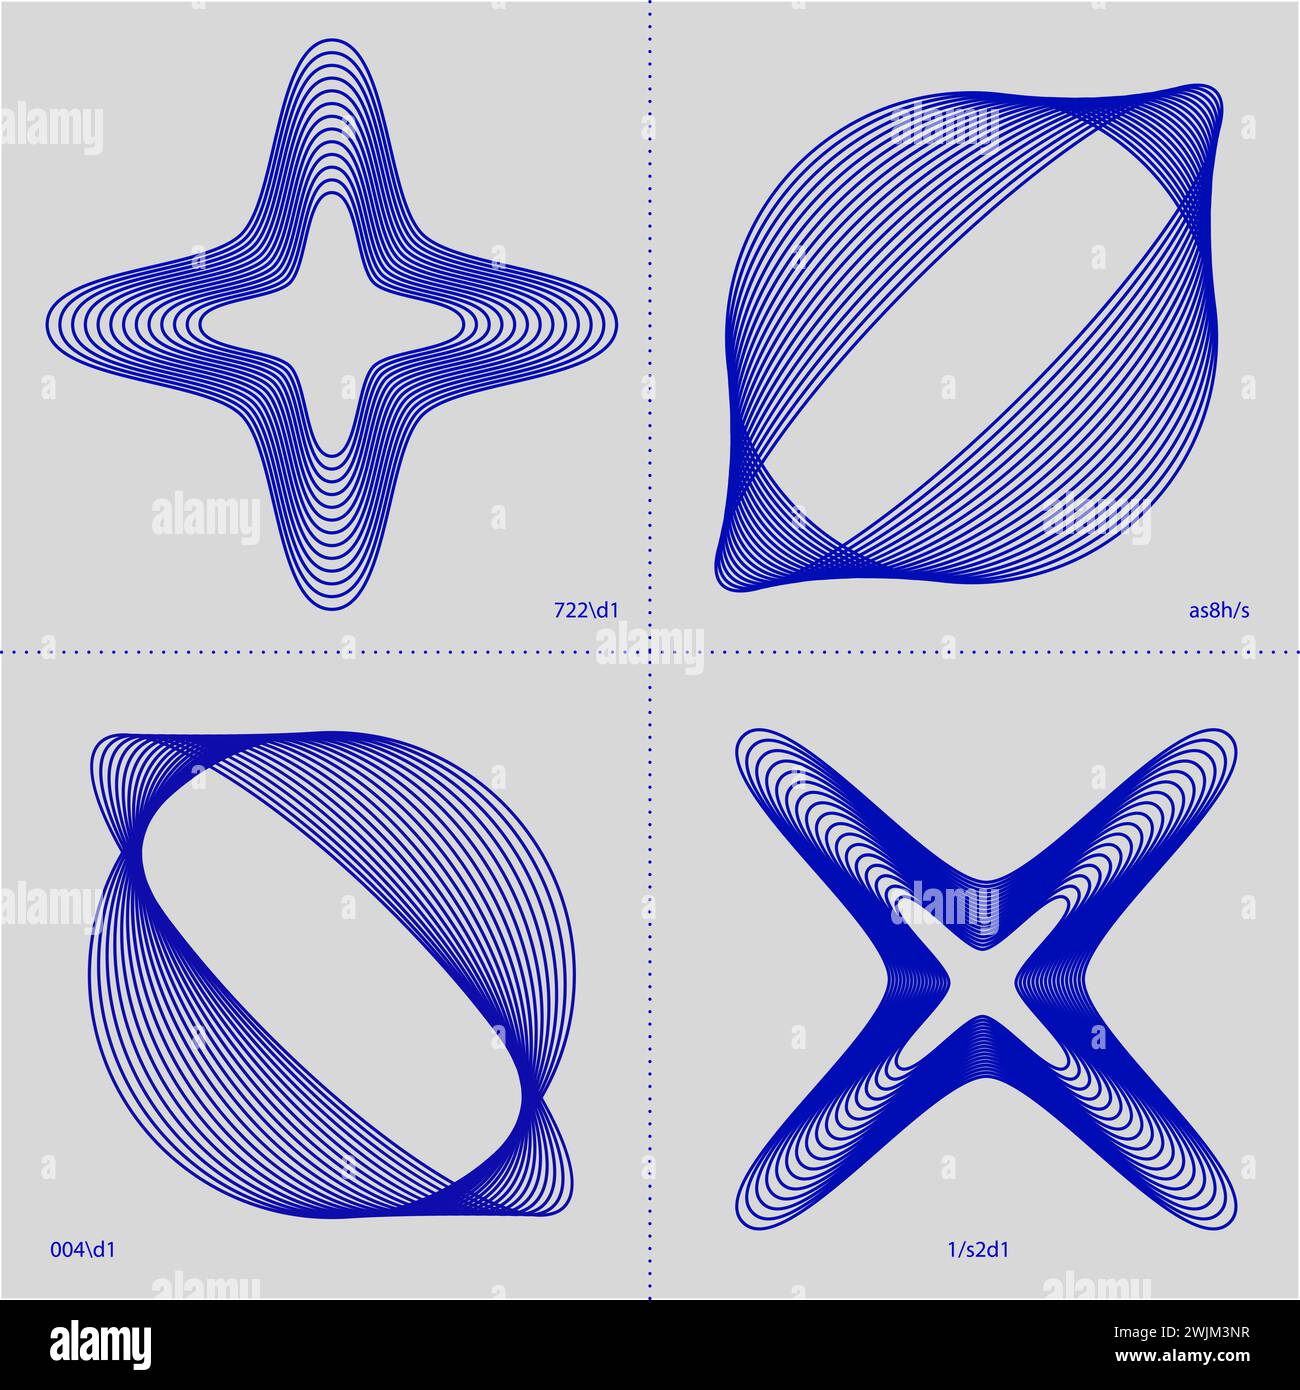 Vier blaue geometrische Formen mit einem Stern und kugelförmigen Obertönen auf einem grauen gepunkteten Hintergrund. Moderne Ästhetik, minimalistische Kunst. Stock Vektor